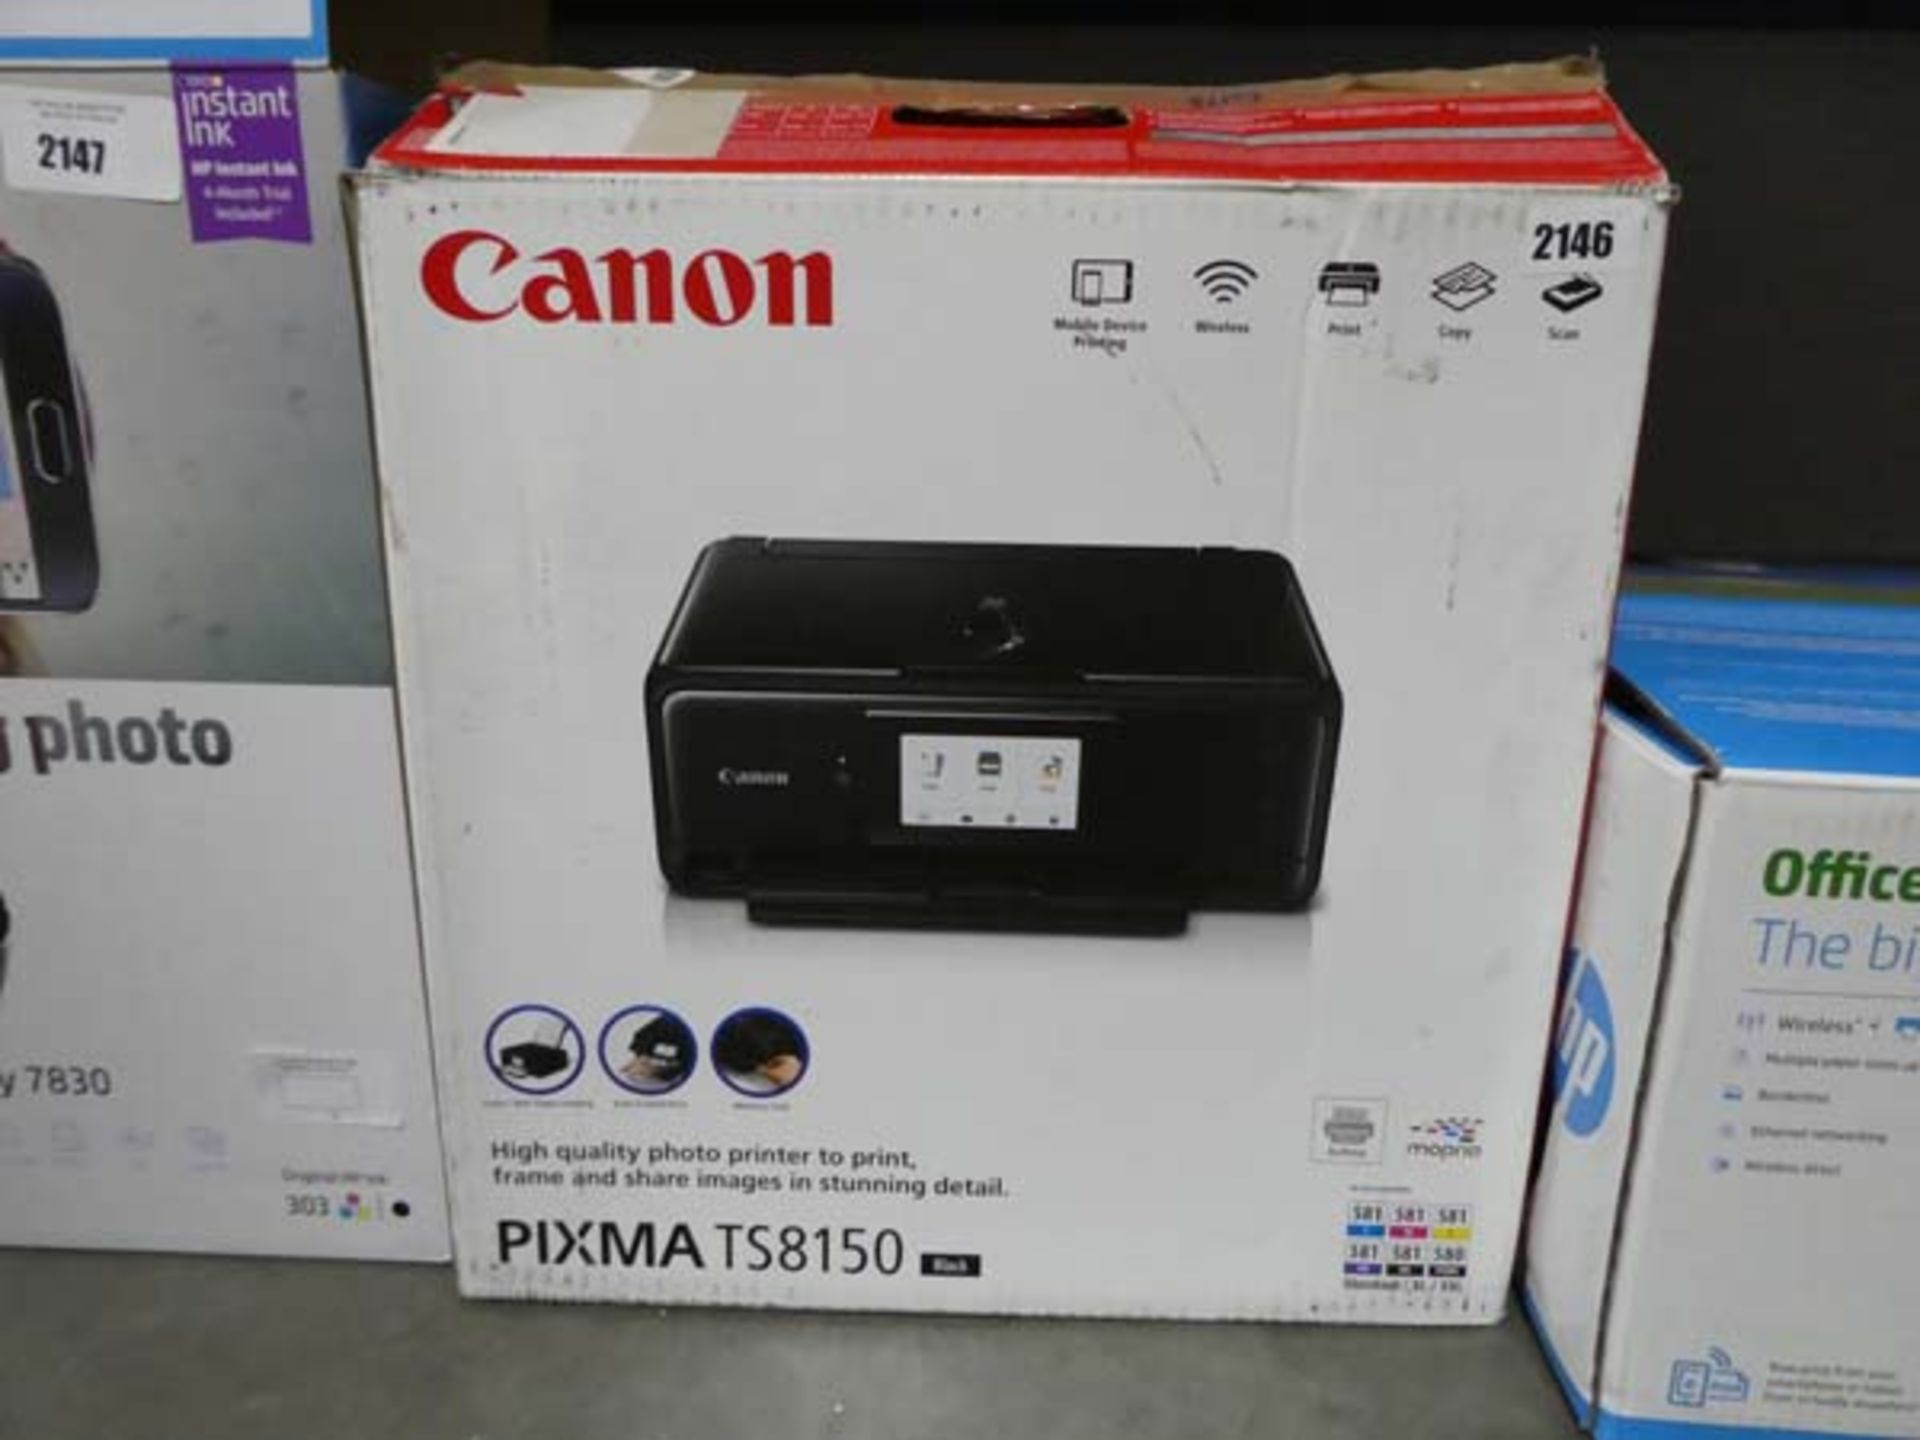 Canon Pixma TS8150 printer with box